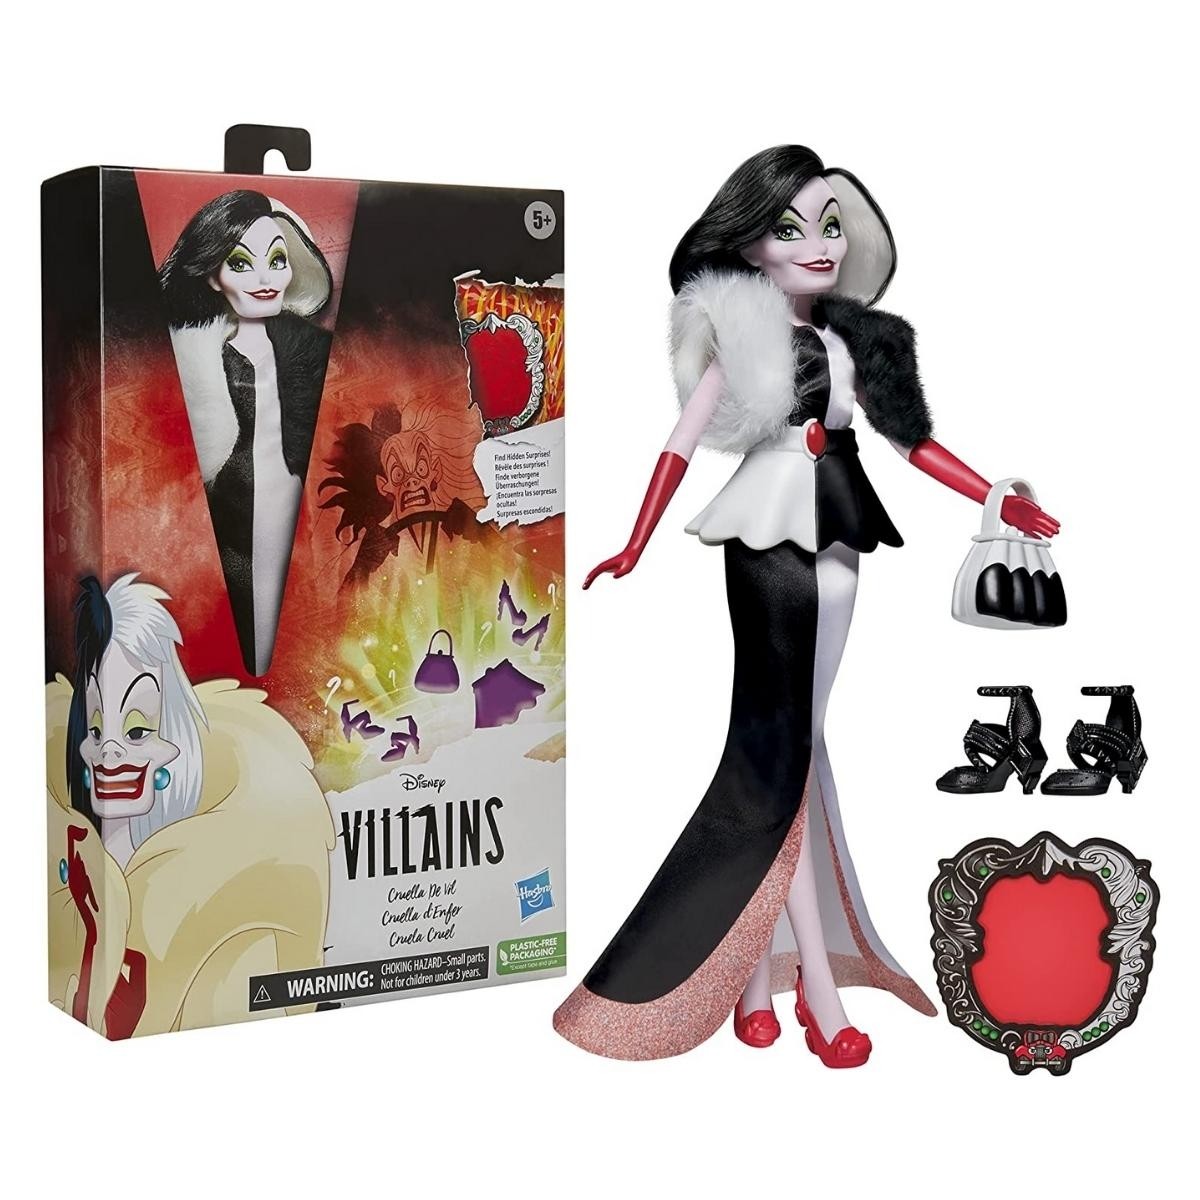 Boneca Figura Villains Disney Cruella de Vil - Hasbro